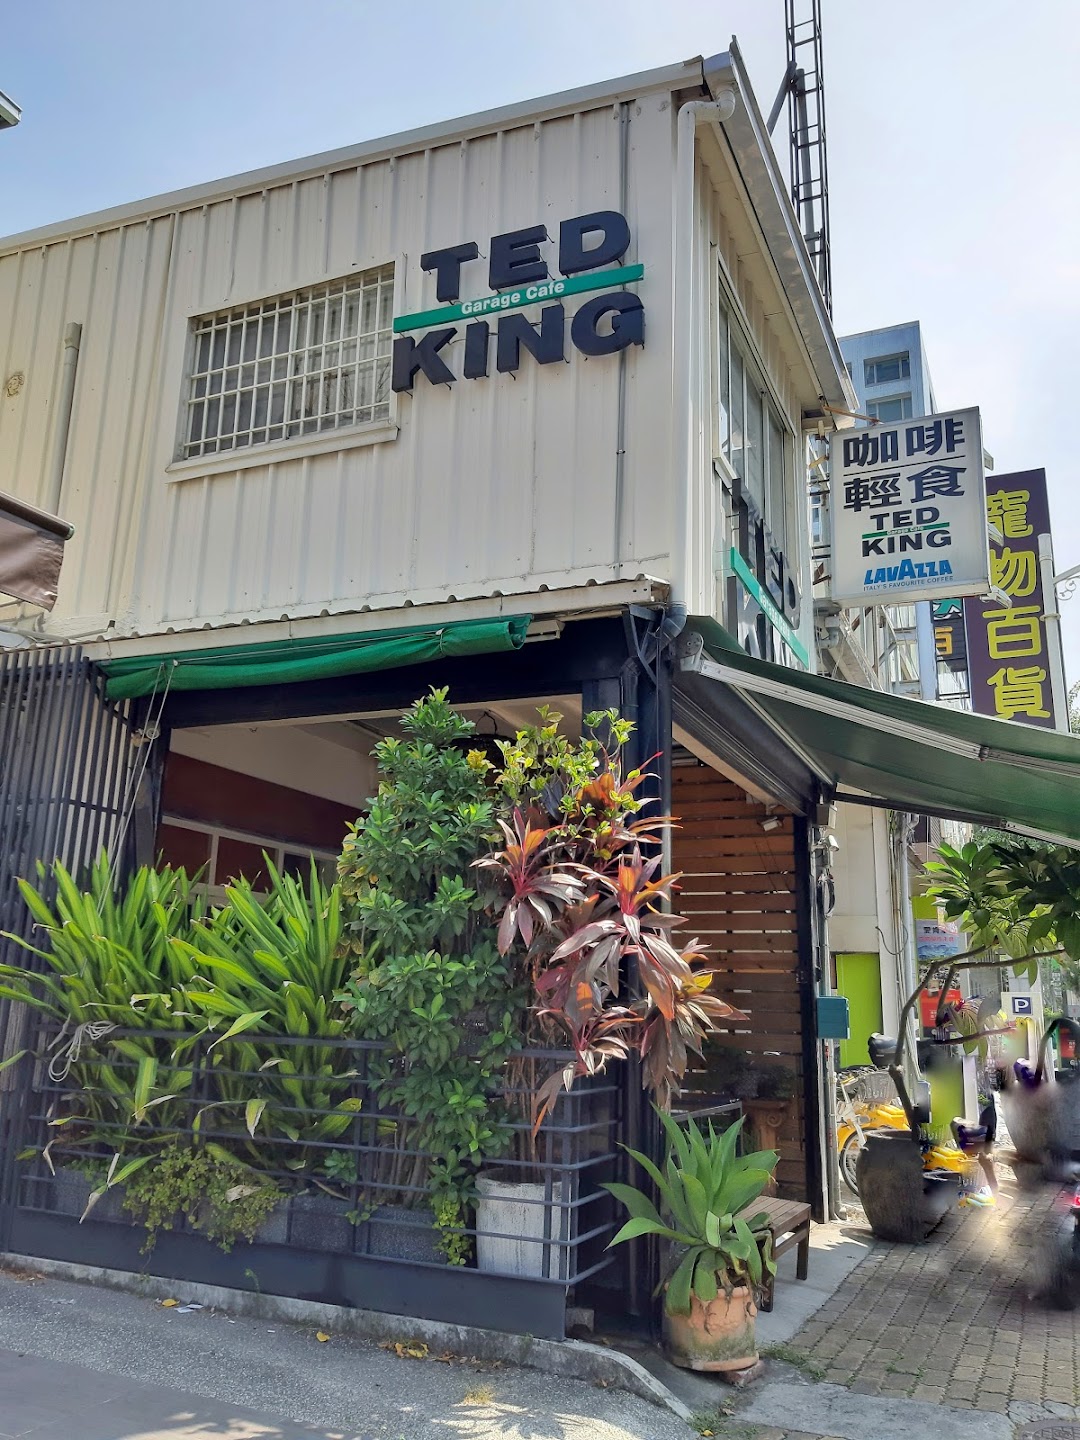 TED KING GARAGE CAFE